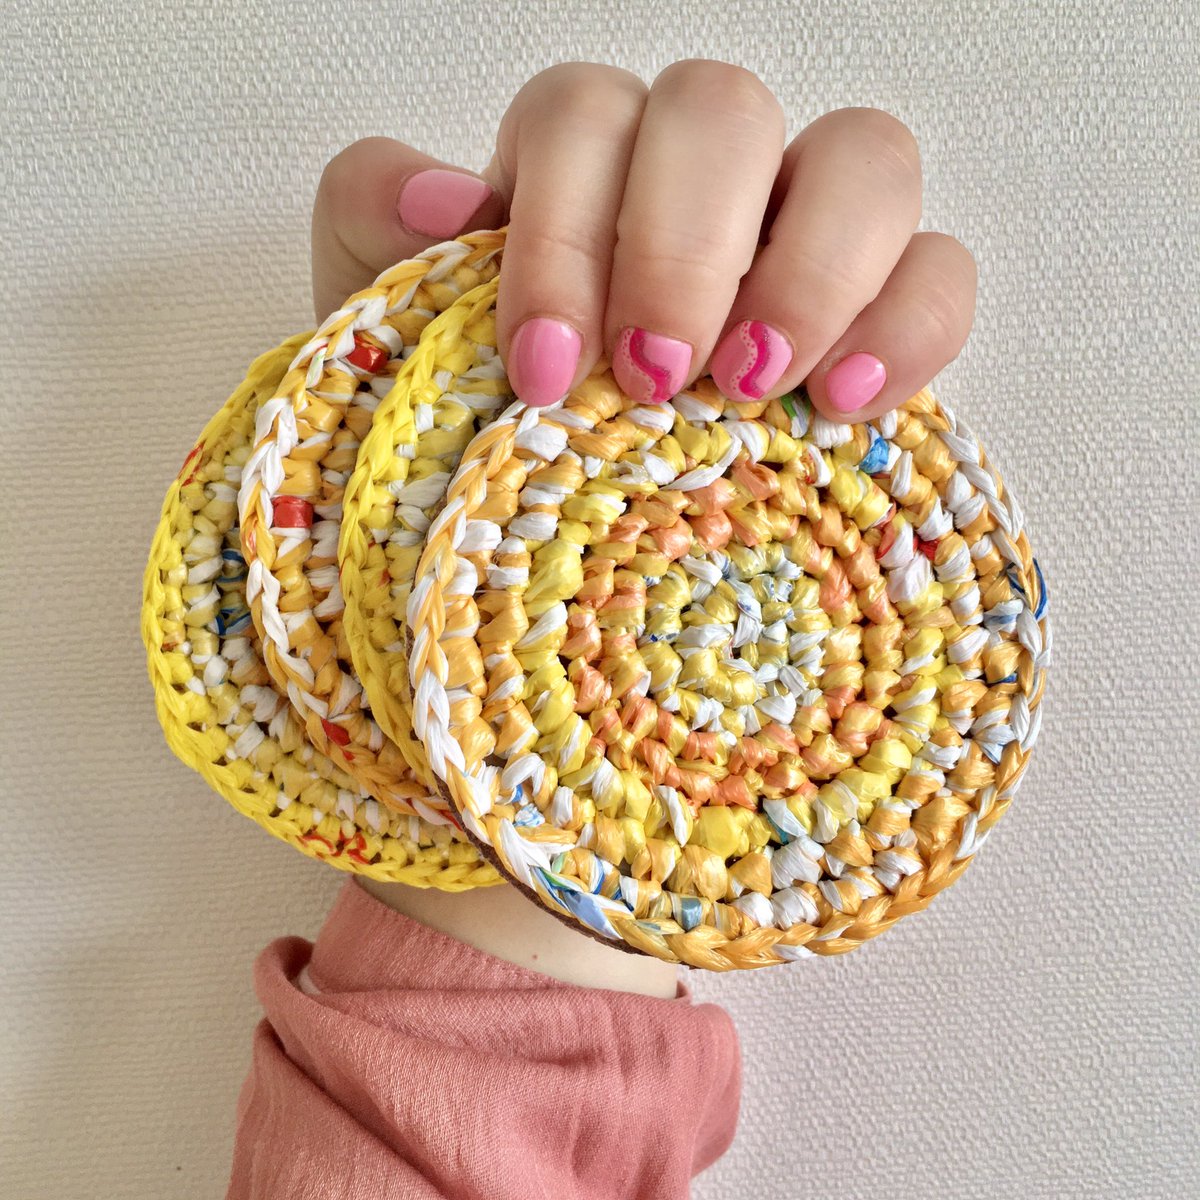 Posavasos de bolsas plásticas ✨
.
instagram.com/p/CW0suR5LjfU/…
.
.
.
.
#creaenverde #zerowaste #tejido #handmade #upcycling #reciclajecreativo #sustentable  #ecocrochet #crochet #chilesinplásticos #chaobolsasplásticas #posavasos #ecofriendly